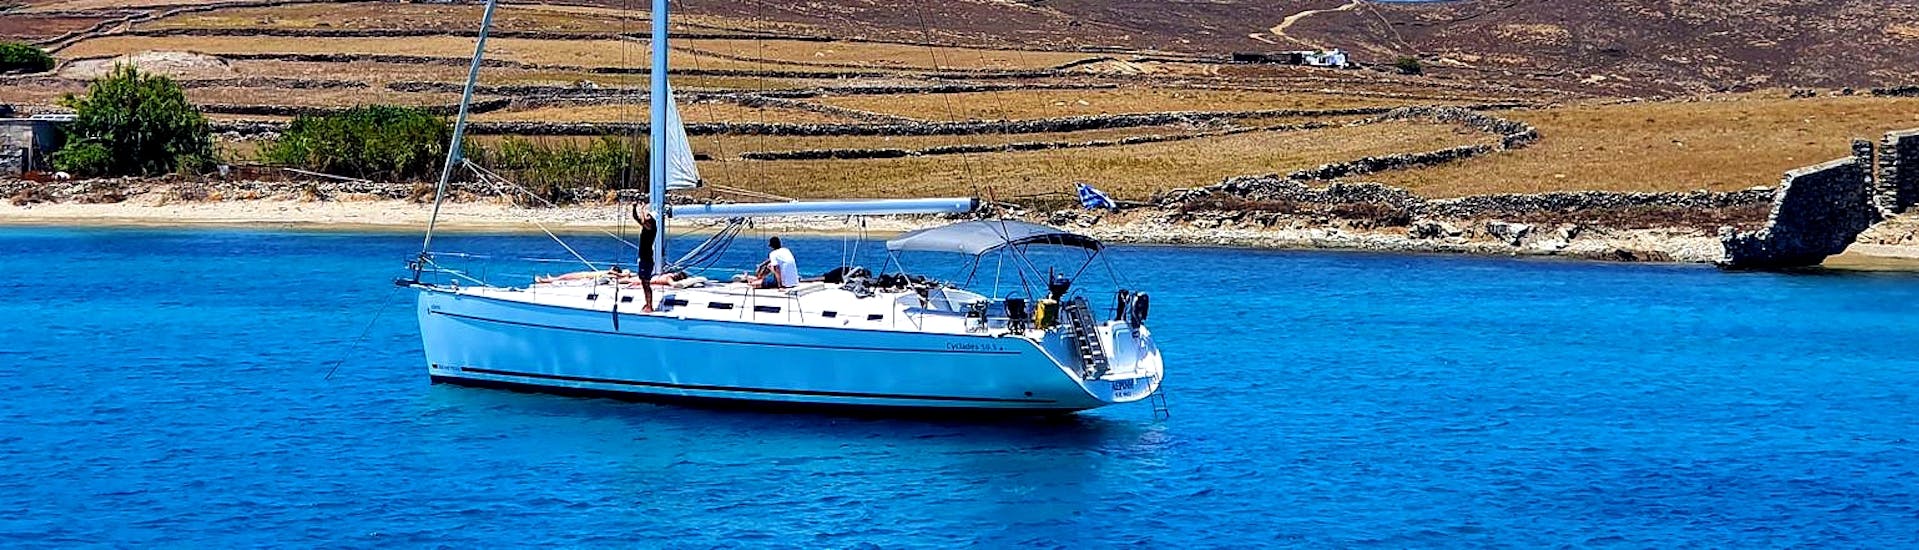 Eine Gruppe von Freunden segelt entlang der Ägäis auf einem eleganten Segeltour während einer Segeltour zur Insel Rhenia mit Mittagessen mit Set Sail Mykonos.